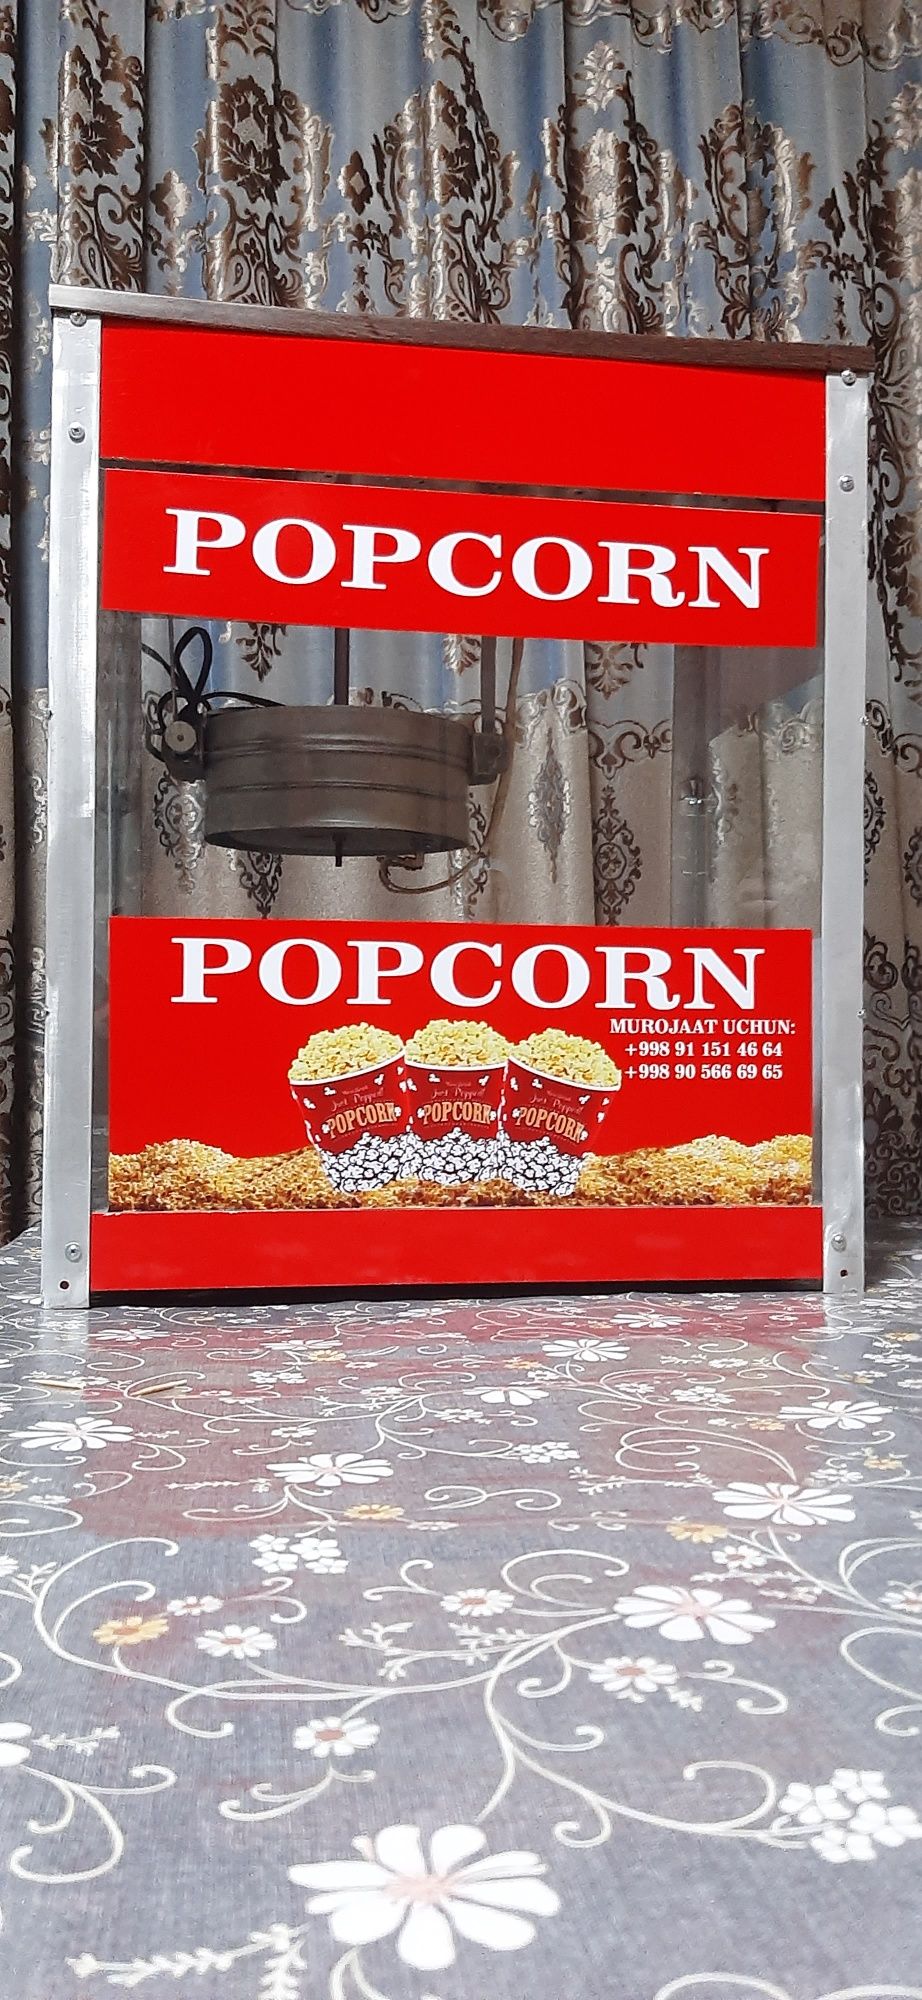 Поп корн (popcorn) апарат янги.